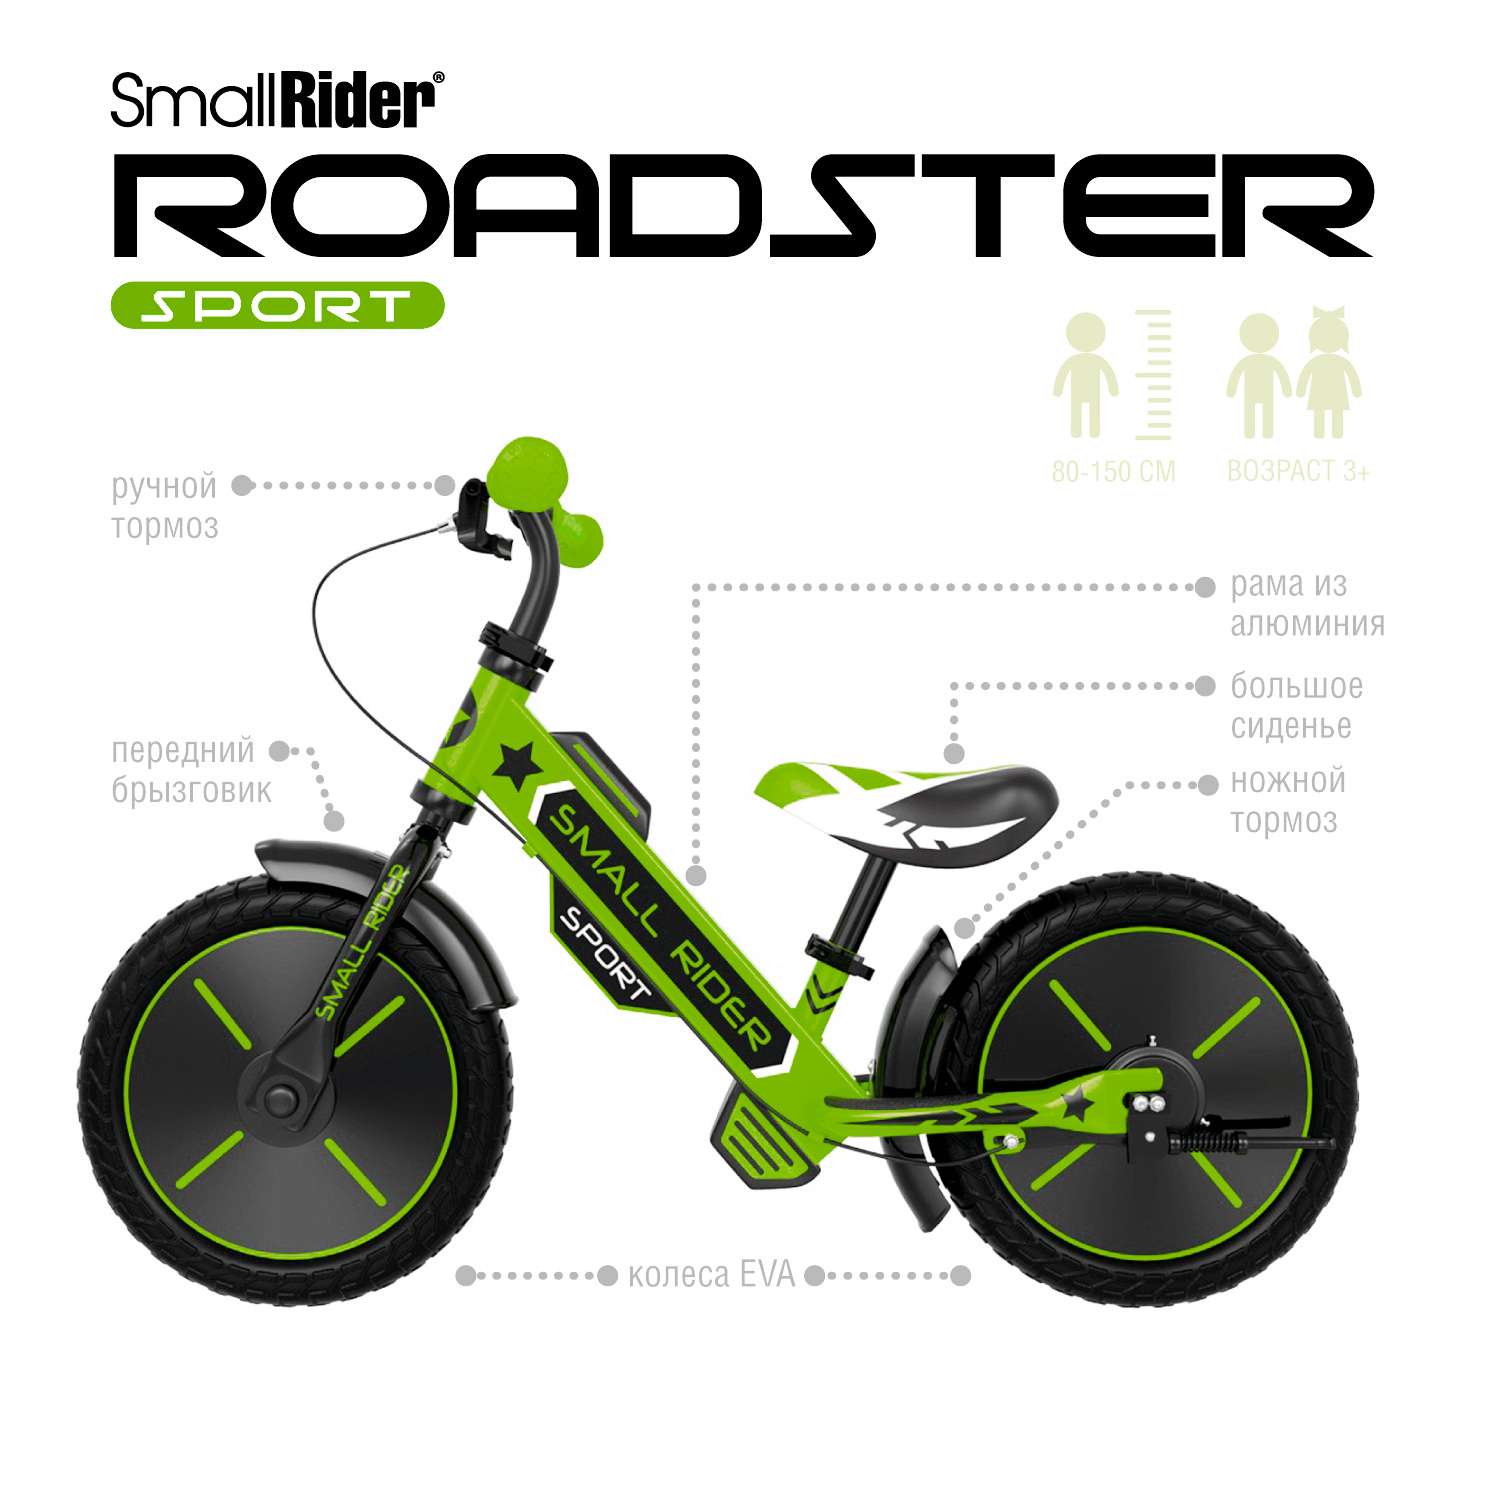 Беговел Small Rider Roadster Sport Eva зеленый - фото 2